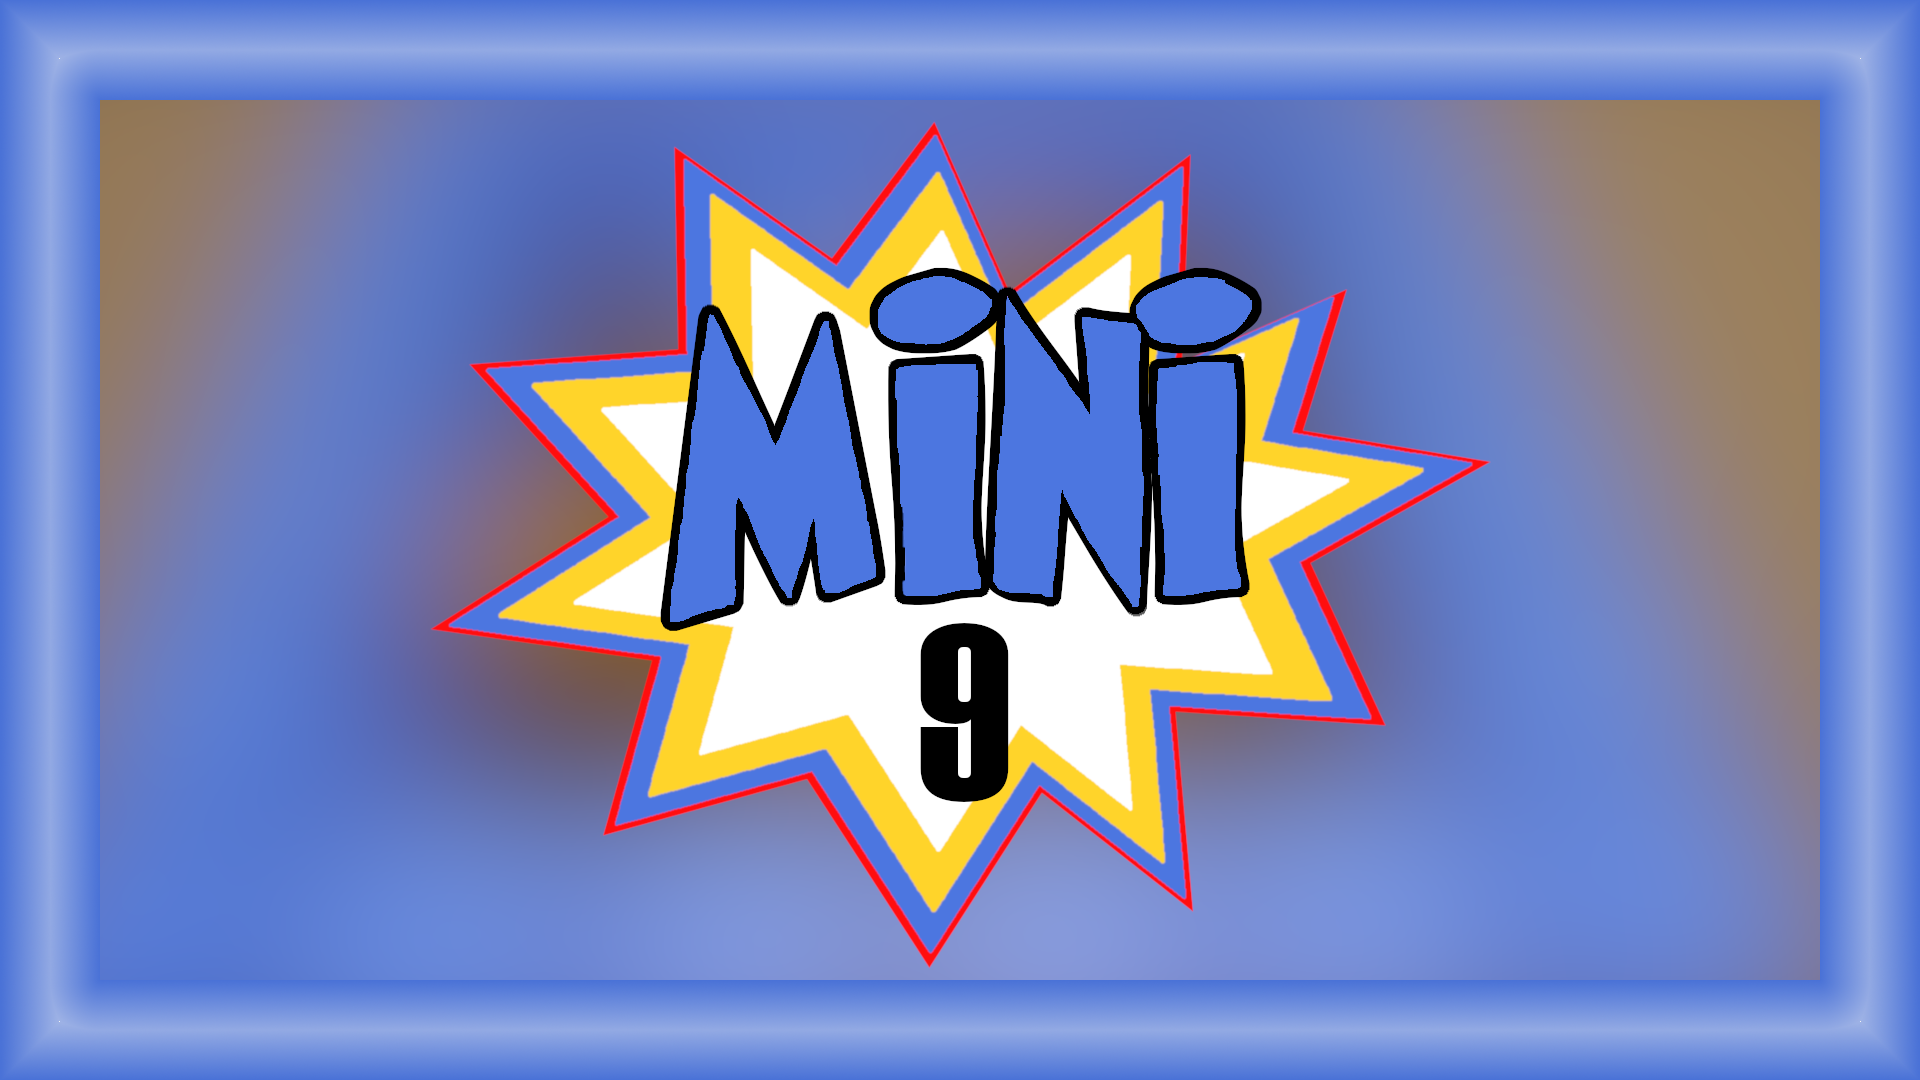 Mini 9